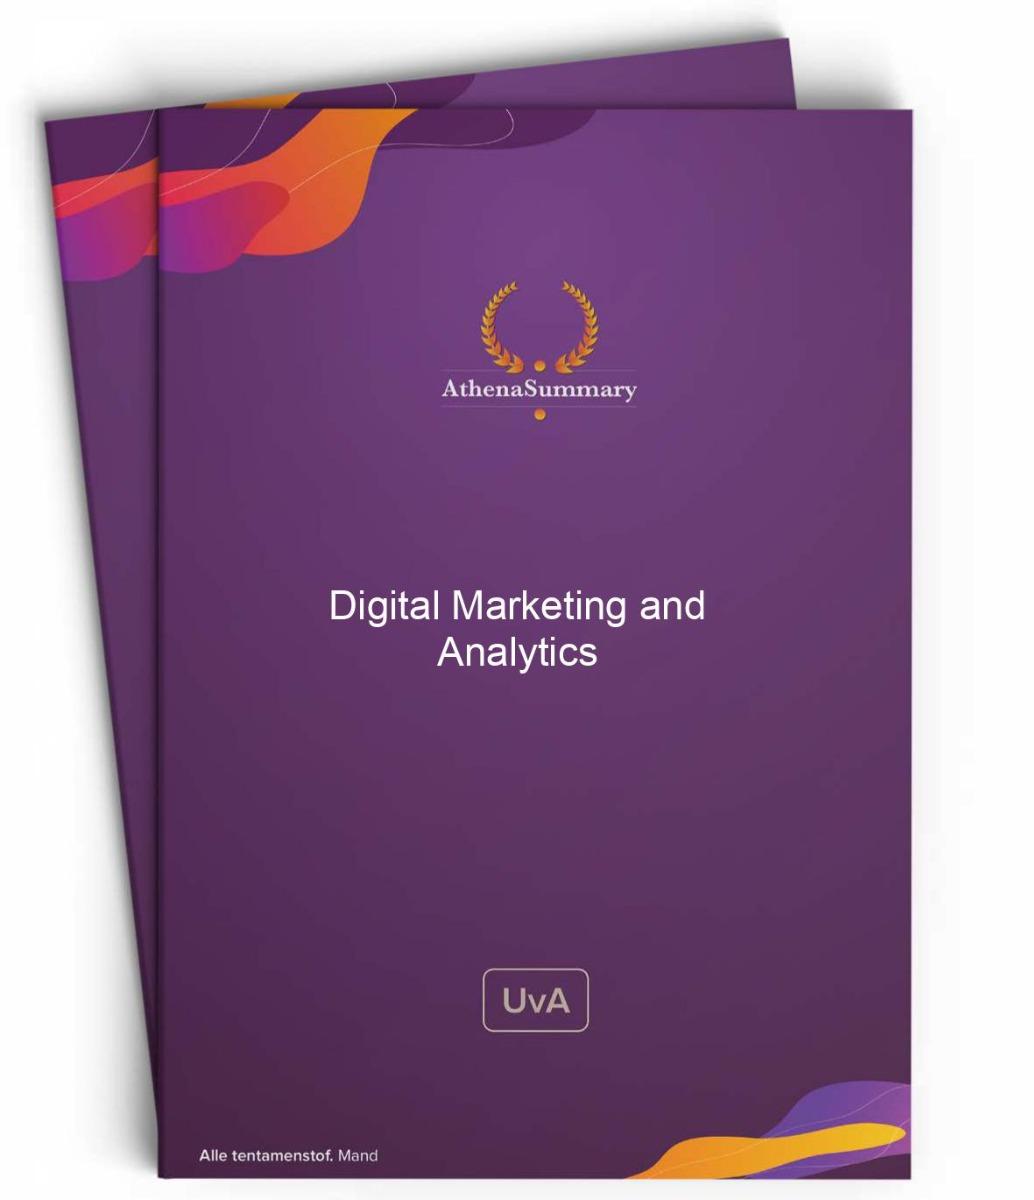 Literature Summary: Digital Marketing and Analytics